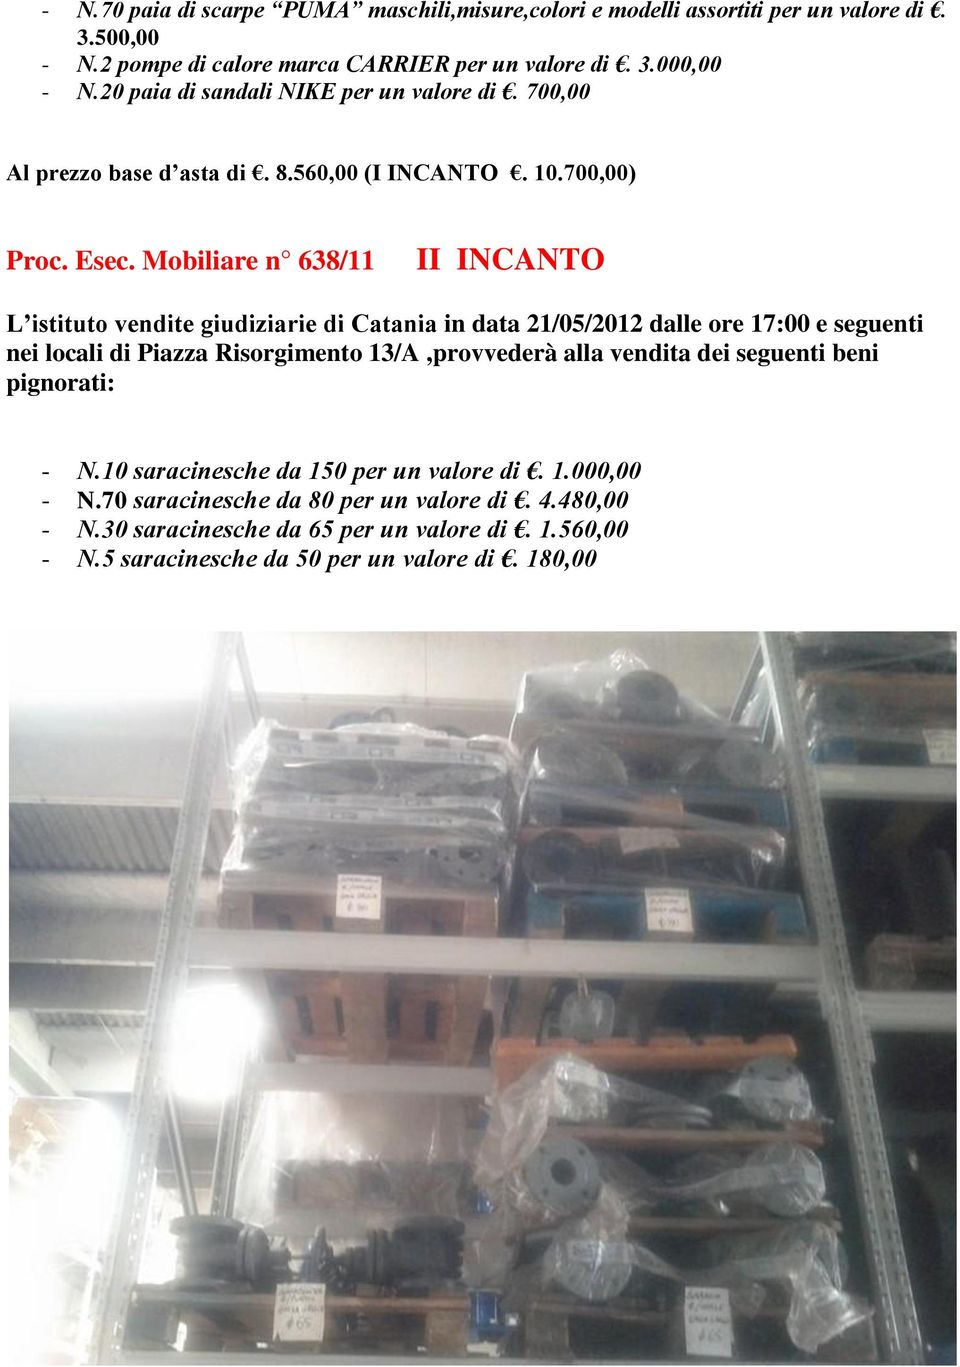 560,00 (I INCANTO. 10.700,00) Proc. Esec. Mobiliare n 638/11 nei locali di Piazza Risorgimento 13/A,provvederà alla vendita dei seguenti beni - N.